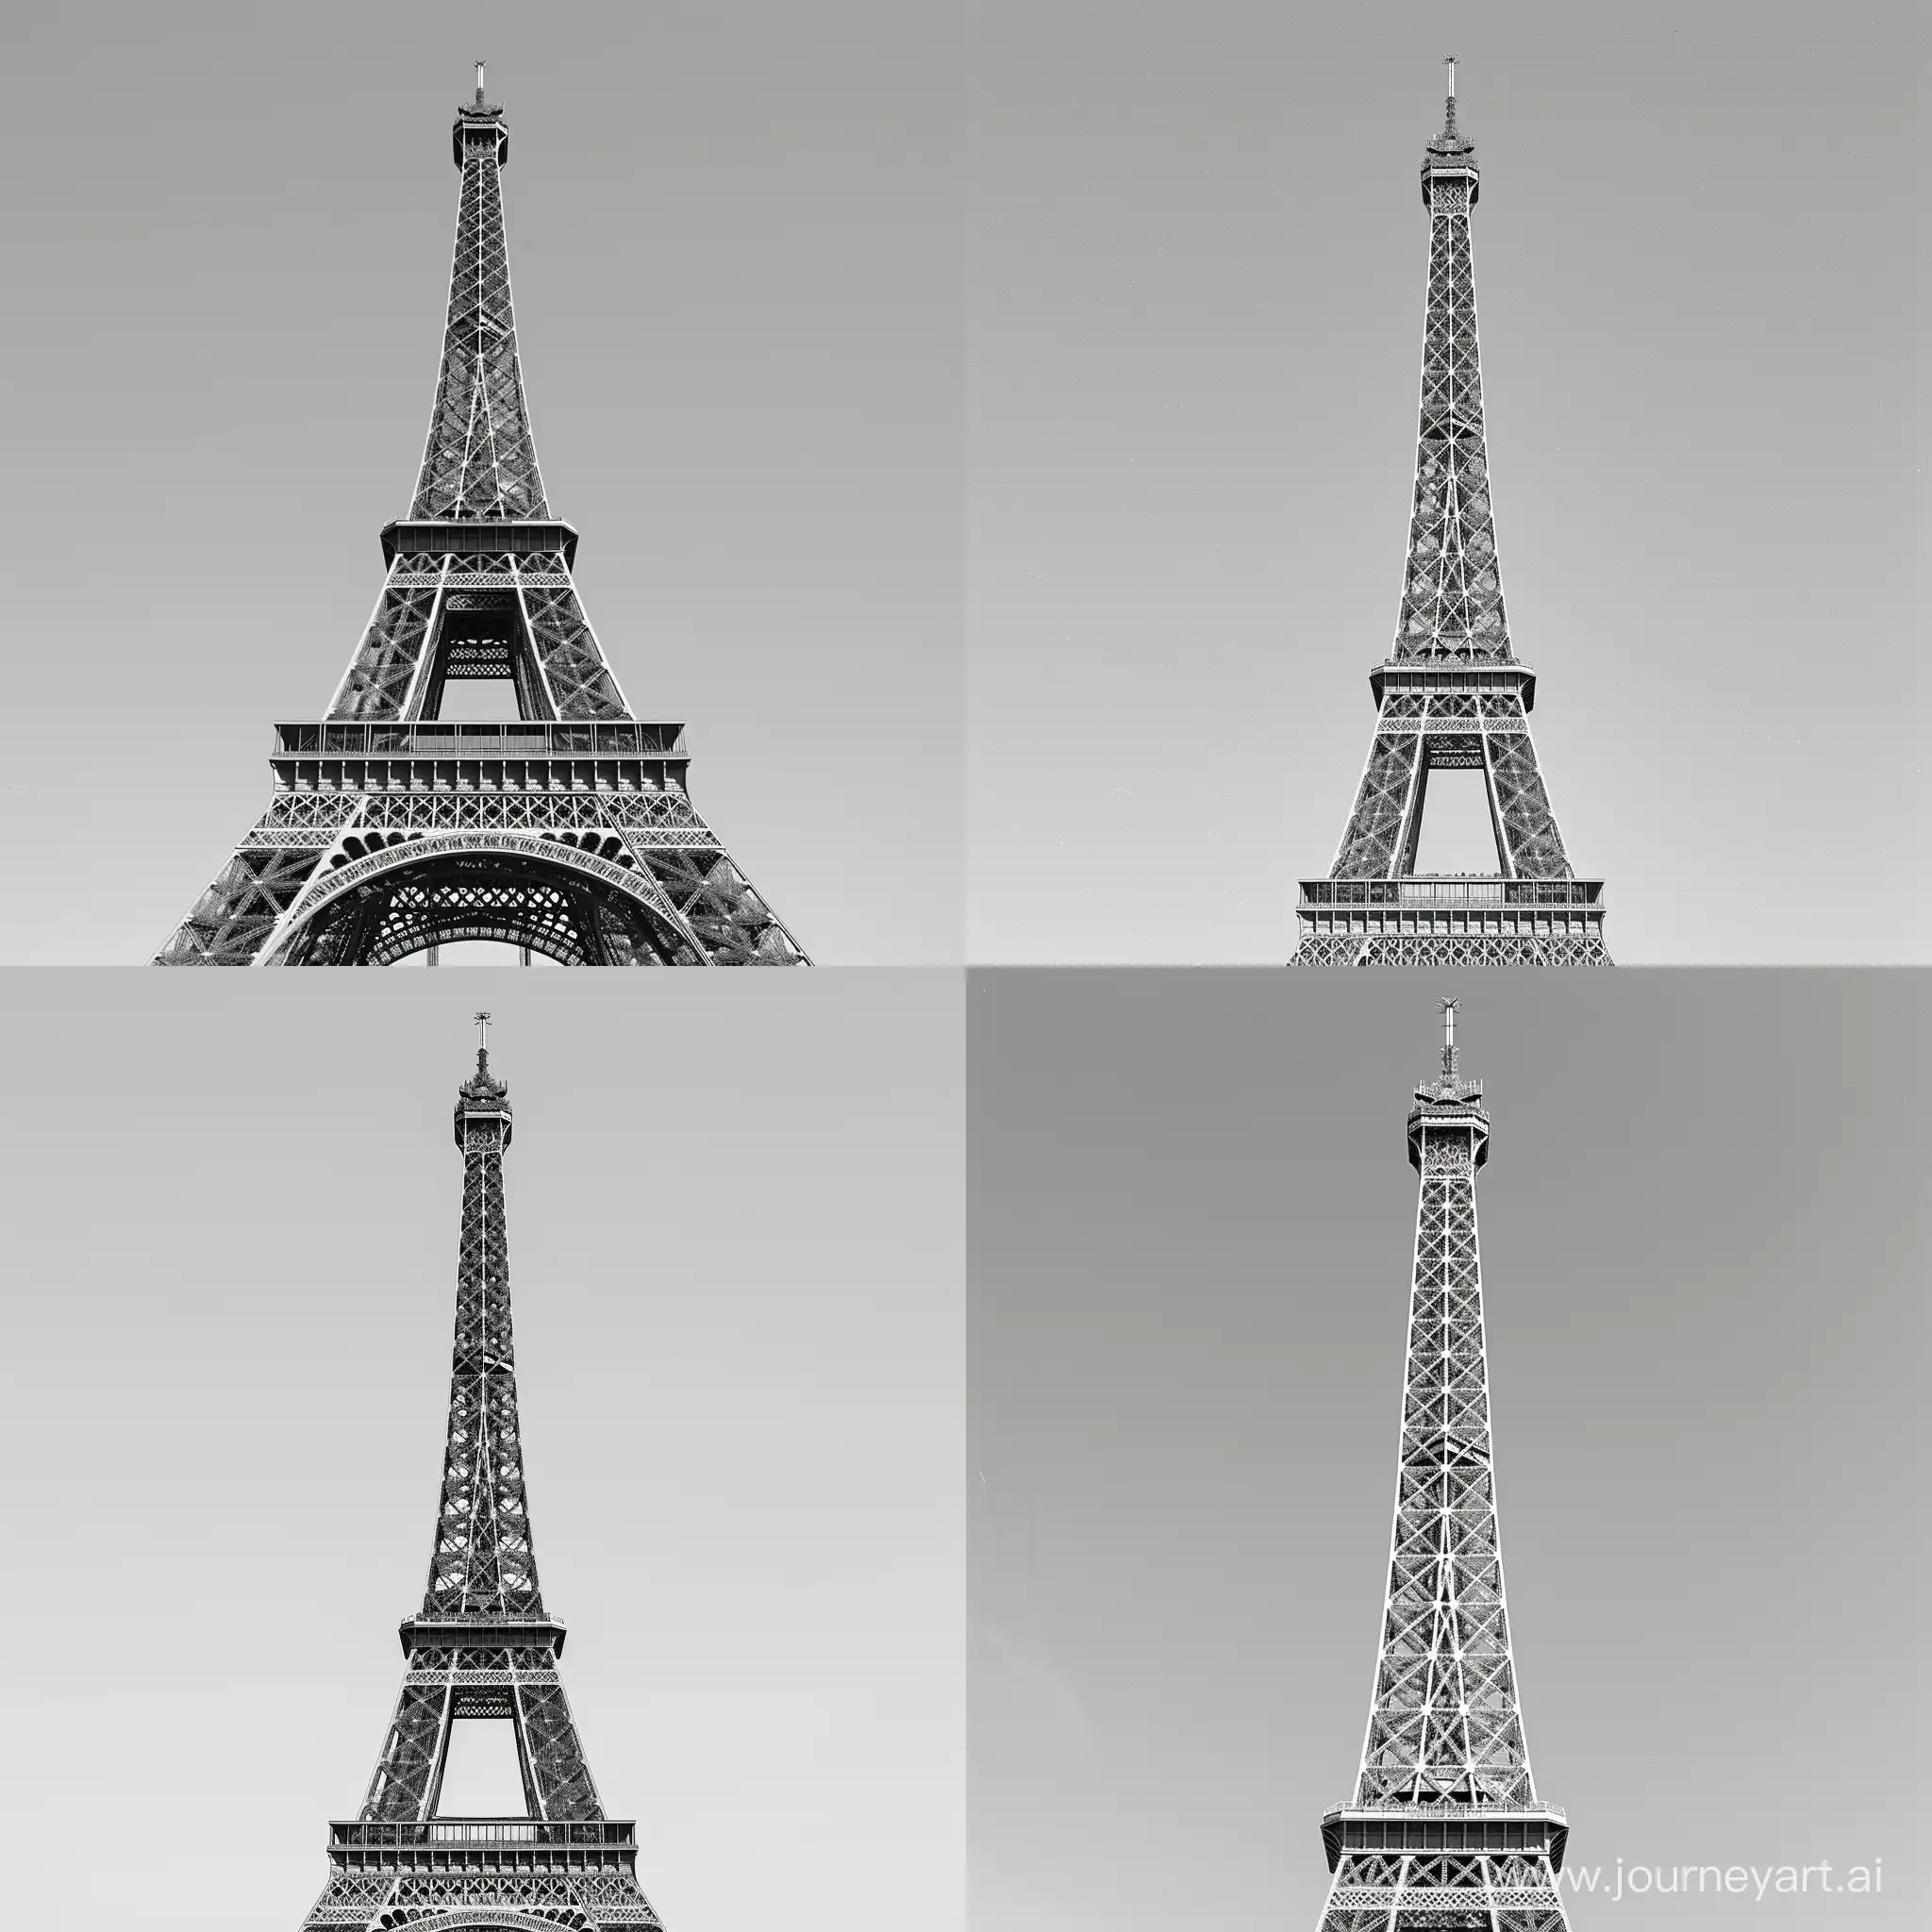 Eiffel Tower, stylish magazine-like black and white photo, against a uniform gray background

